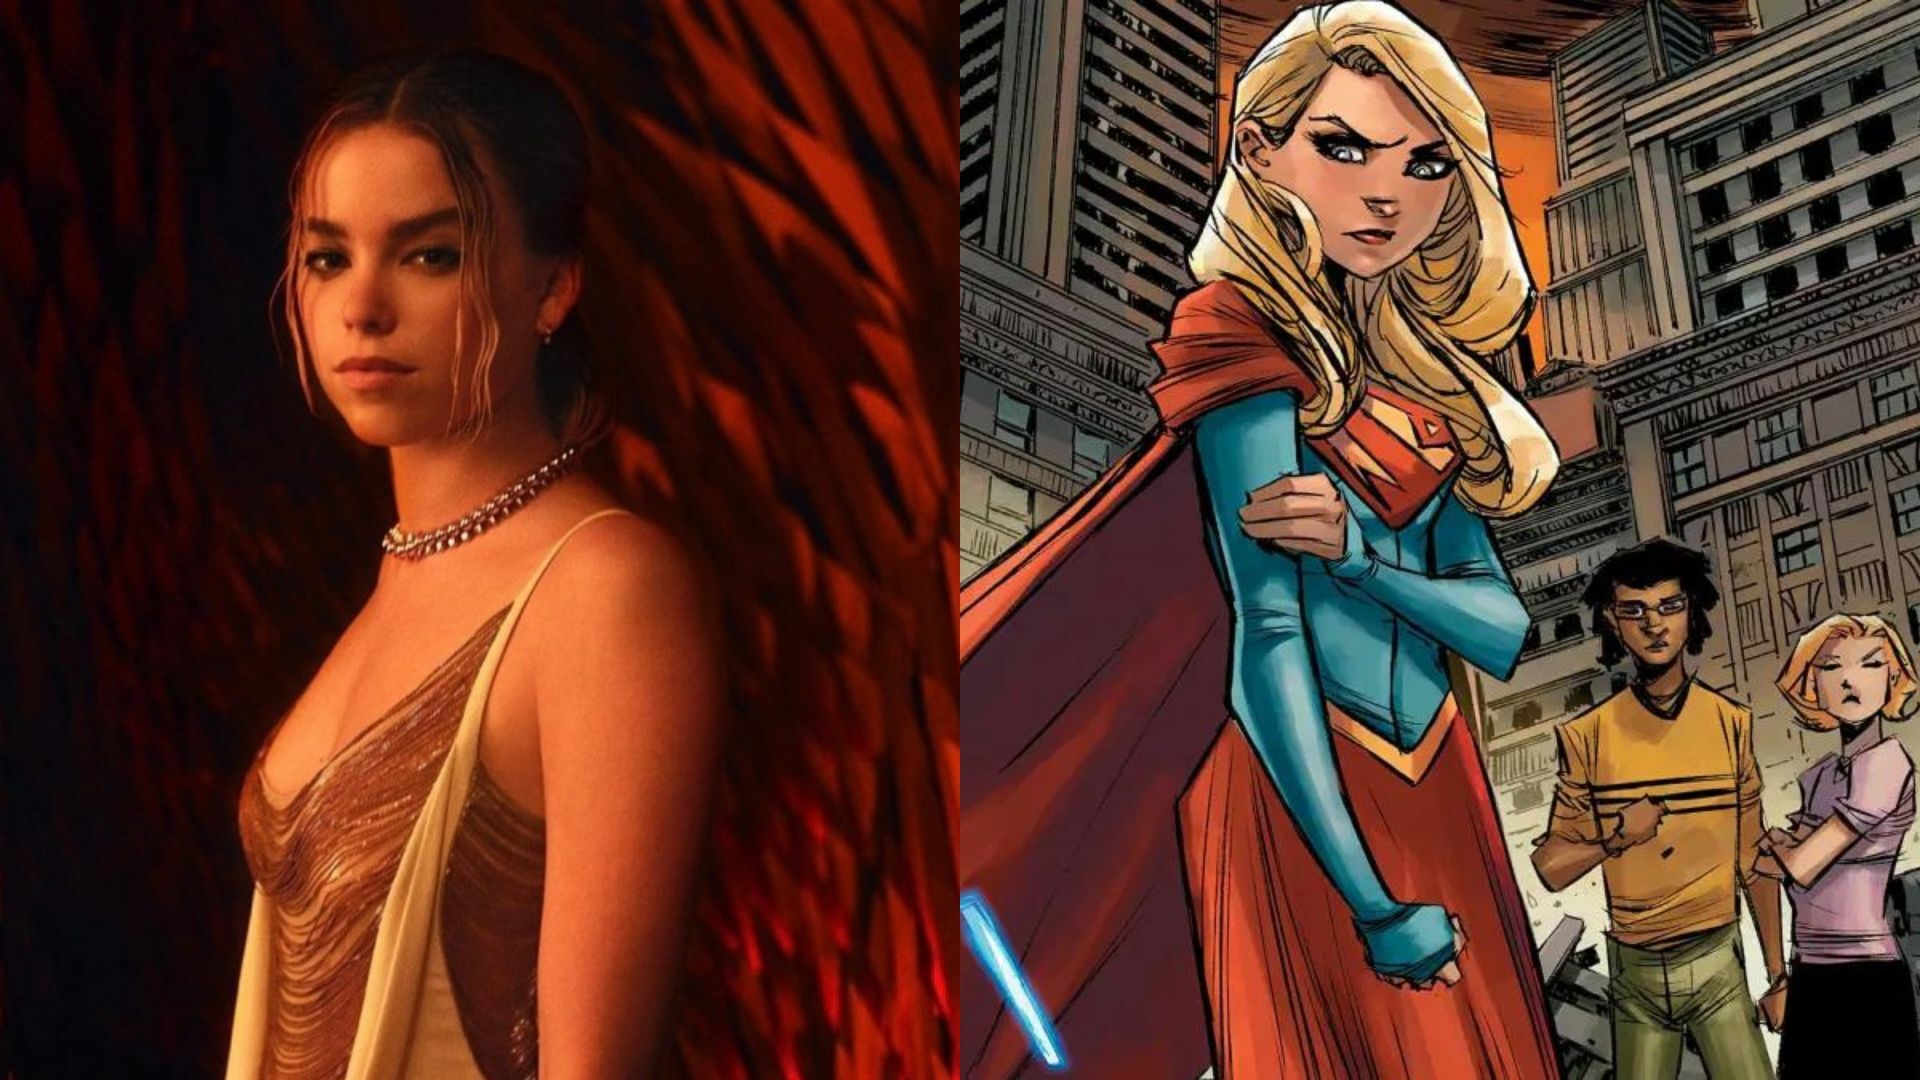 La nueva película de Warner Bros inspirada en los personajes de DC Comics, Supergirl: Woman of Tomorrow, ya encontró a su protagonista. La actriz elegida para dar vida a Kara Zor- El es Milly Alcock, conocida por la serie House of the Dragon de HBO. 